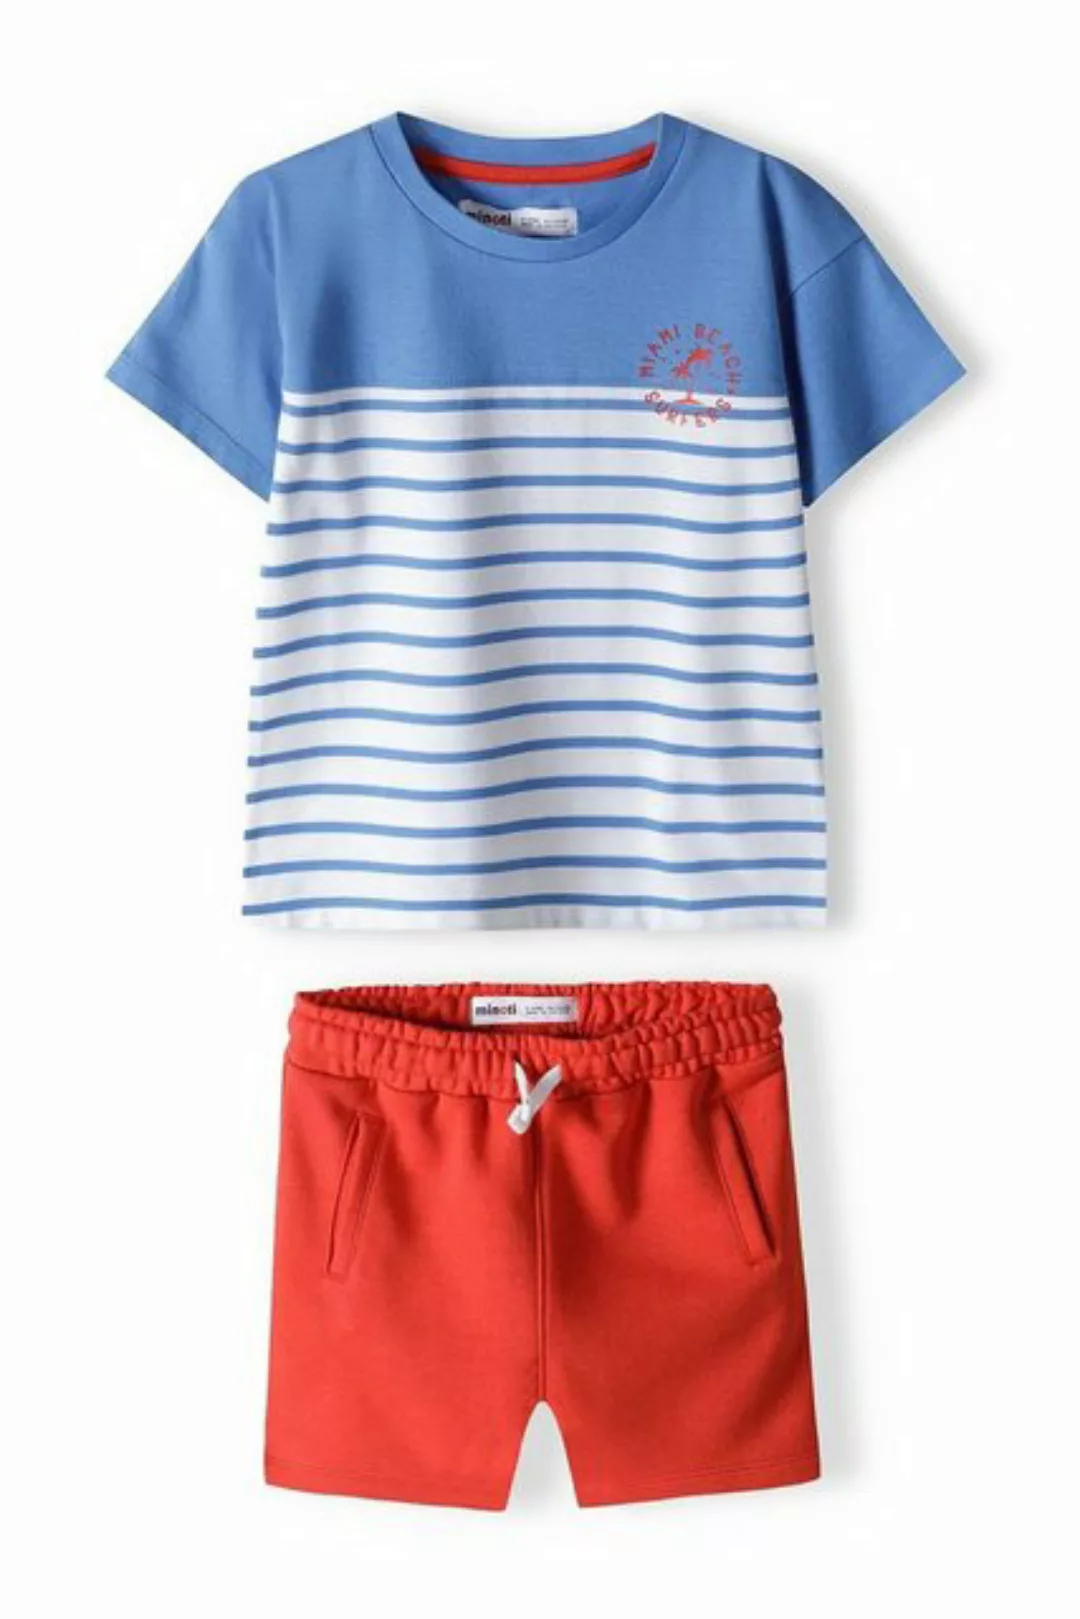 MINOTI T-Shirt & Sweatbermudas T-Shirt und Shorts Set (12m-8y) günstig online kaufen